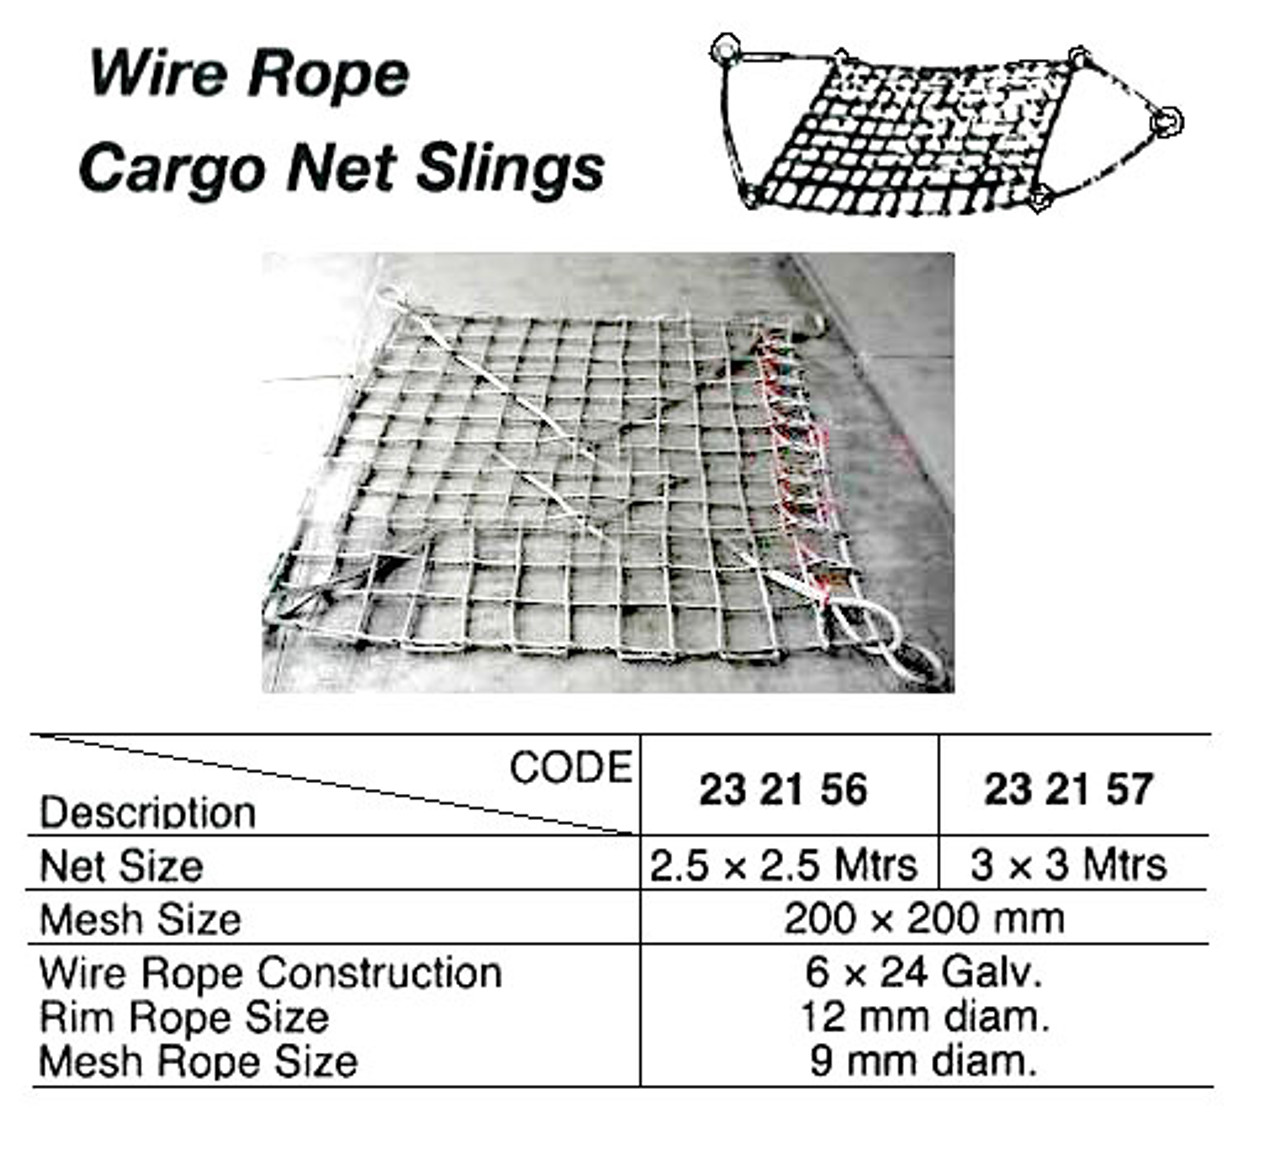 IMPA 232157 CARGO NET 3x3 mtr. STEEL WIRE ROPE